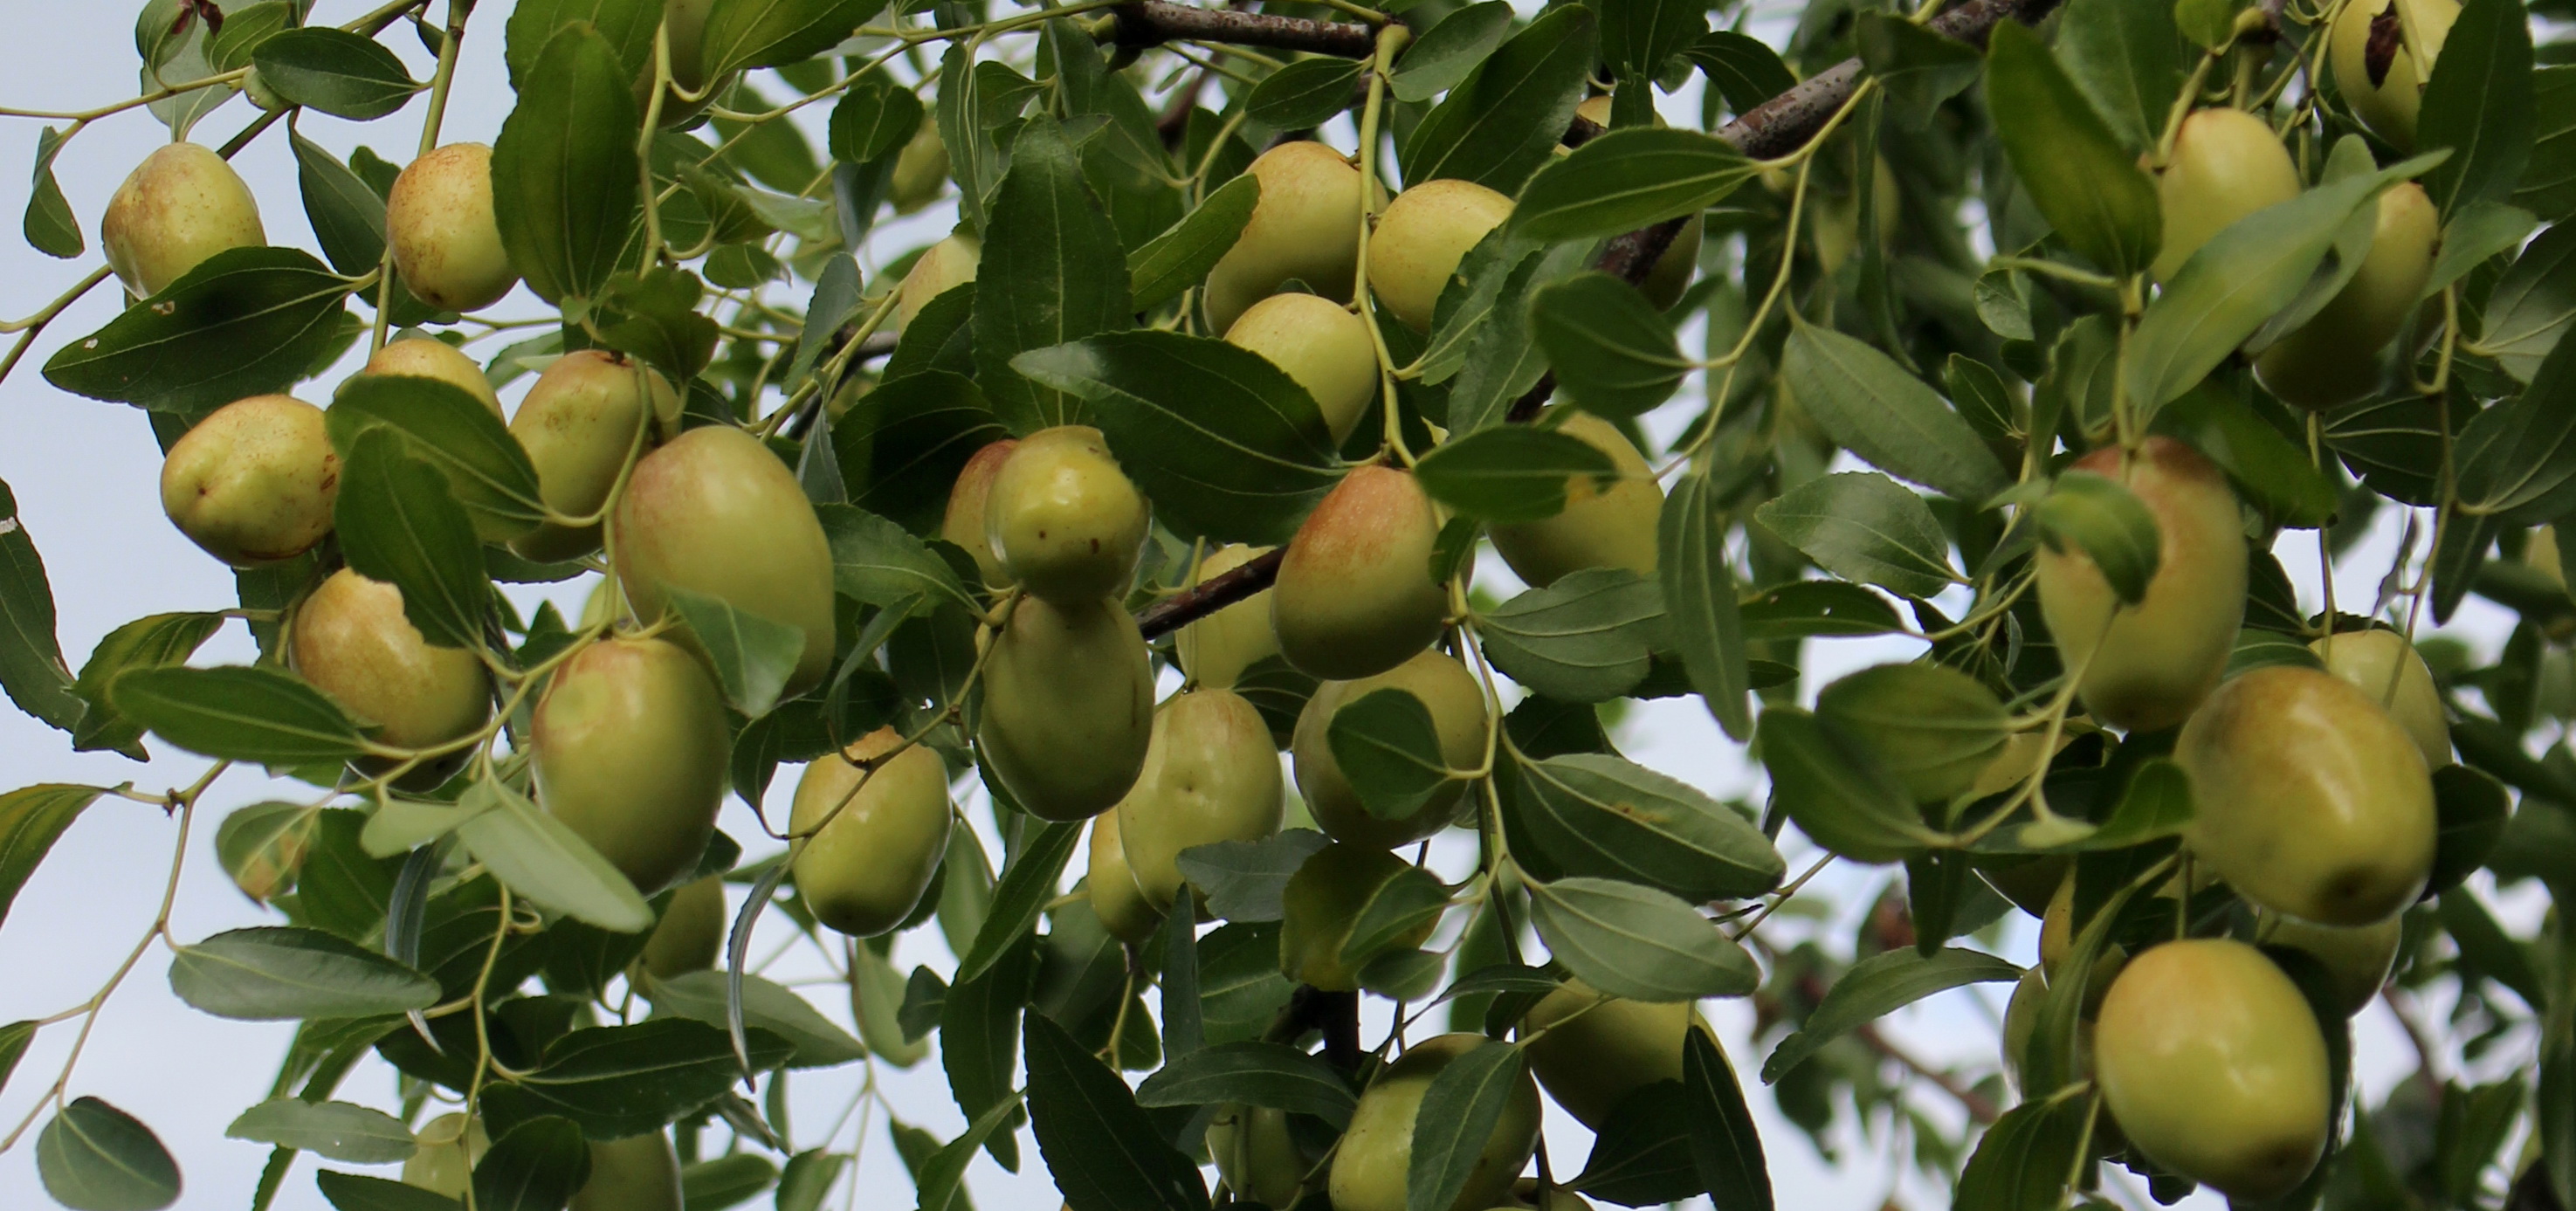 红枣树成熟期图片